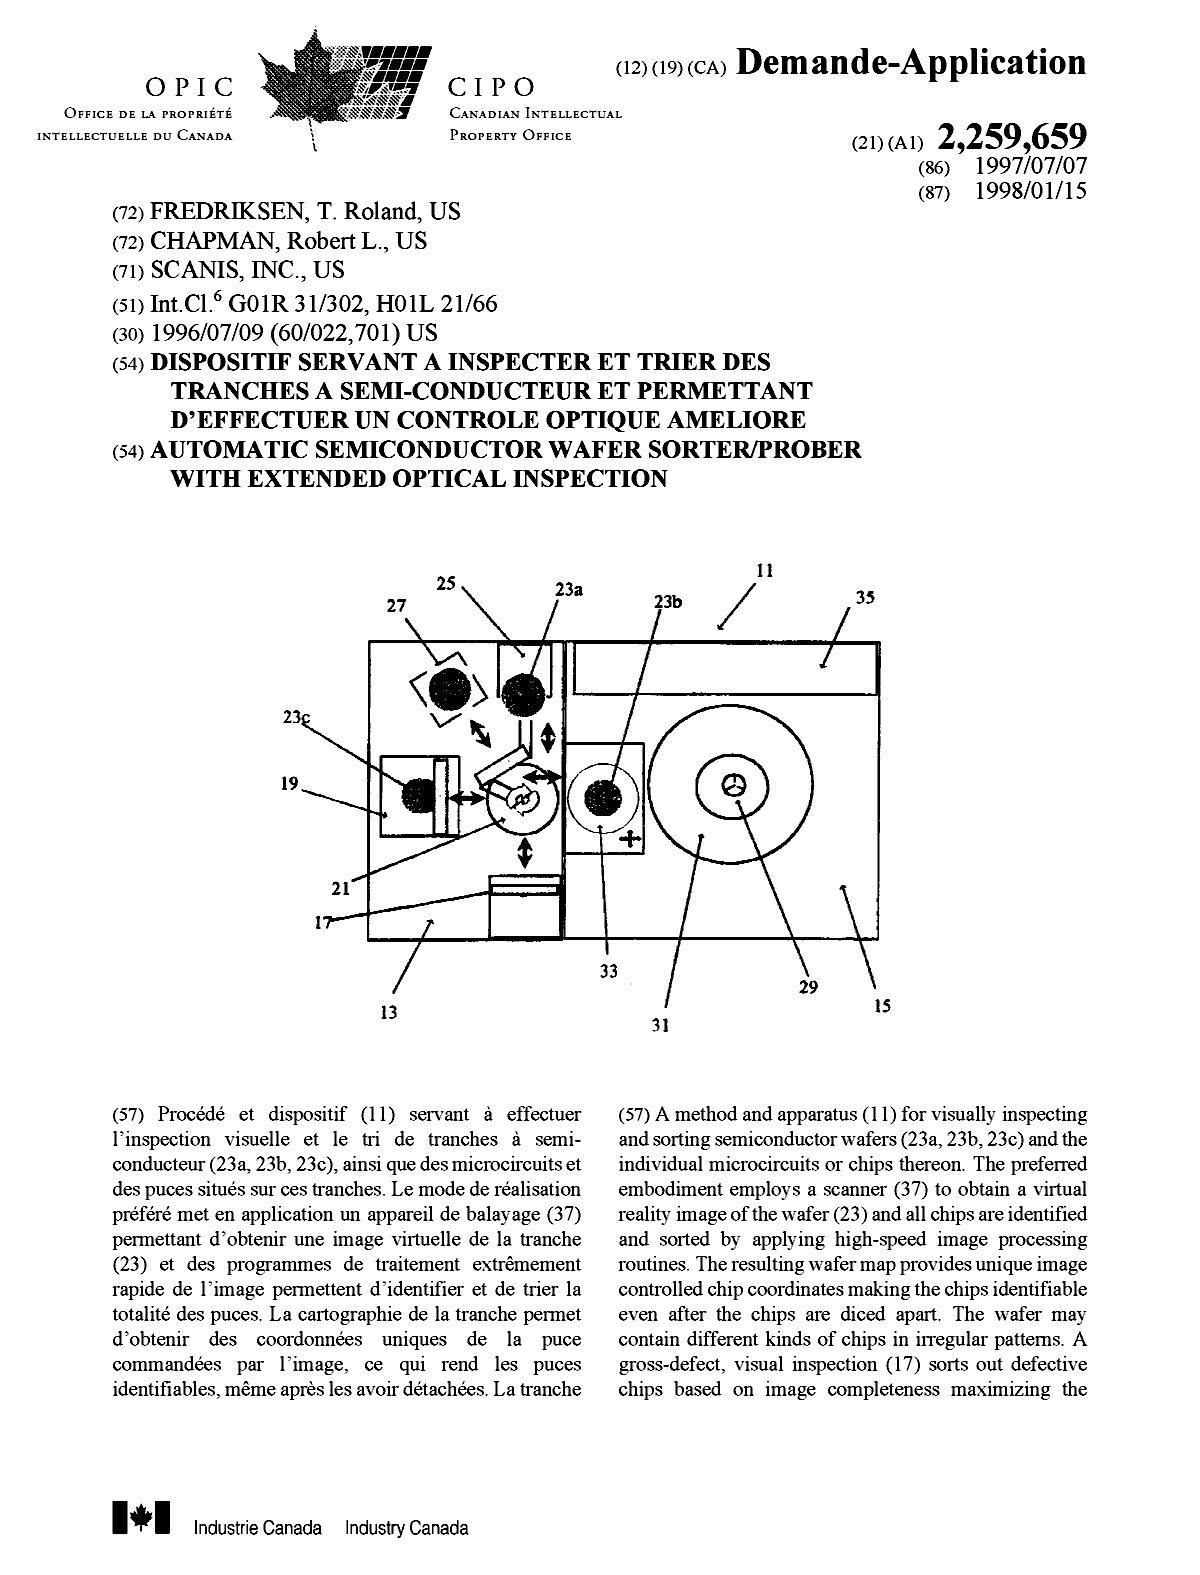 Document de brevet canadien 2259659. Page couverture 19981224. Image 1 de 2